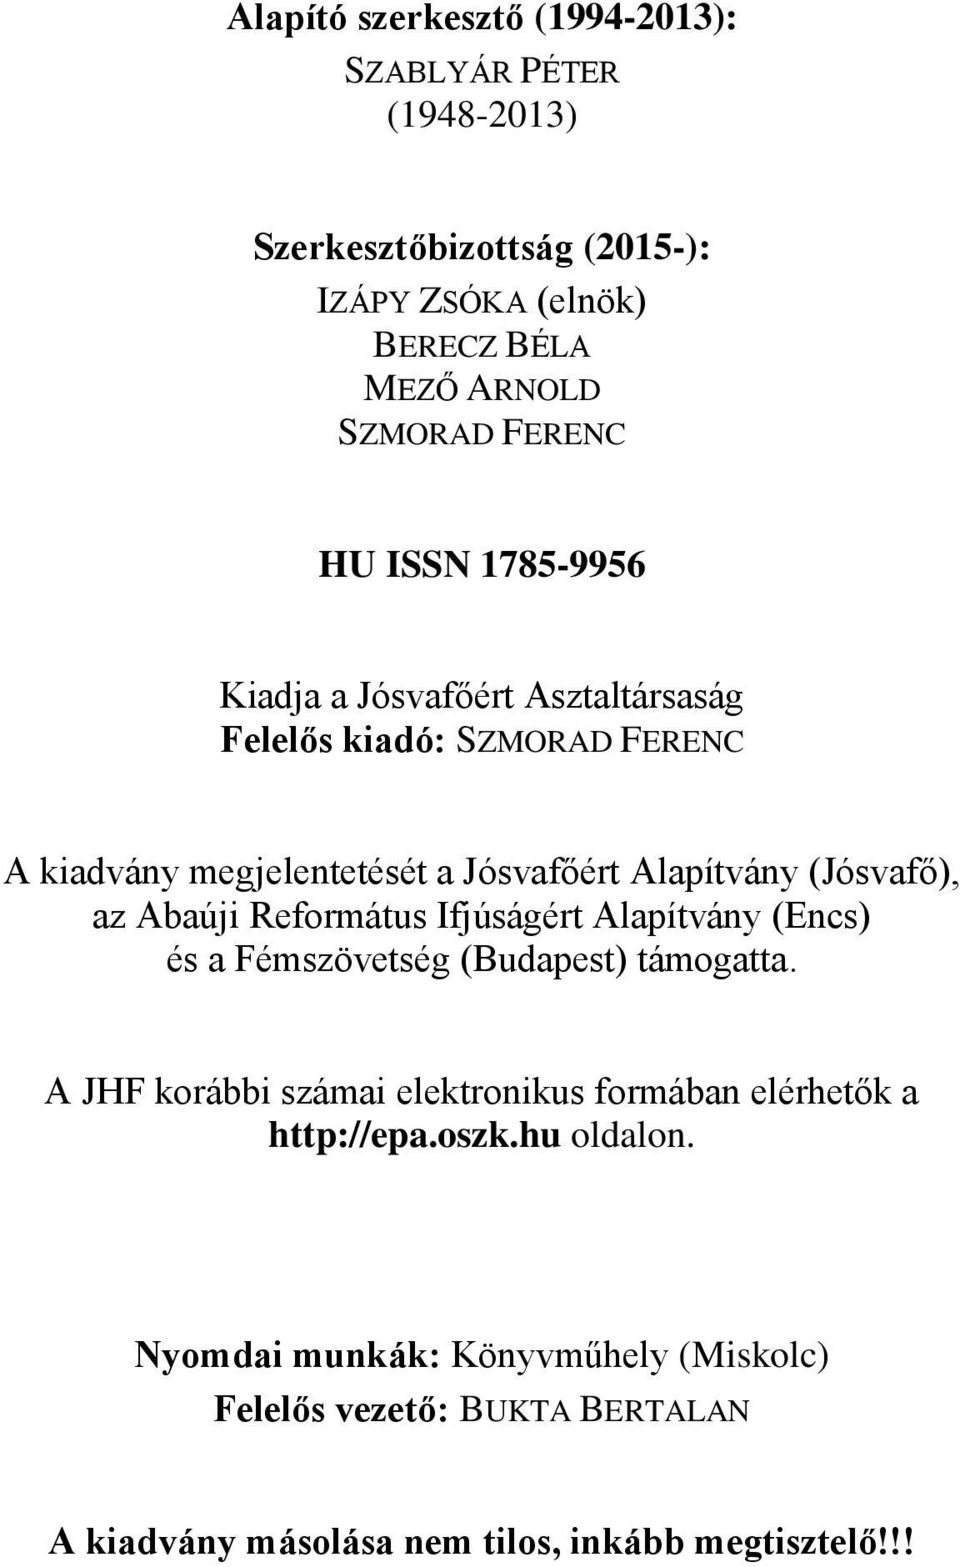 az Abaúji Református Ifjúságért Alapítvány (Encs) és a Fémszövetség (Budapest) támogatta.